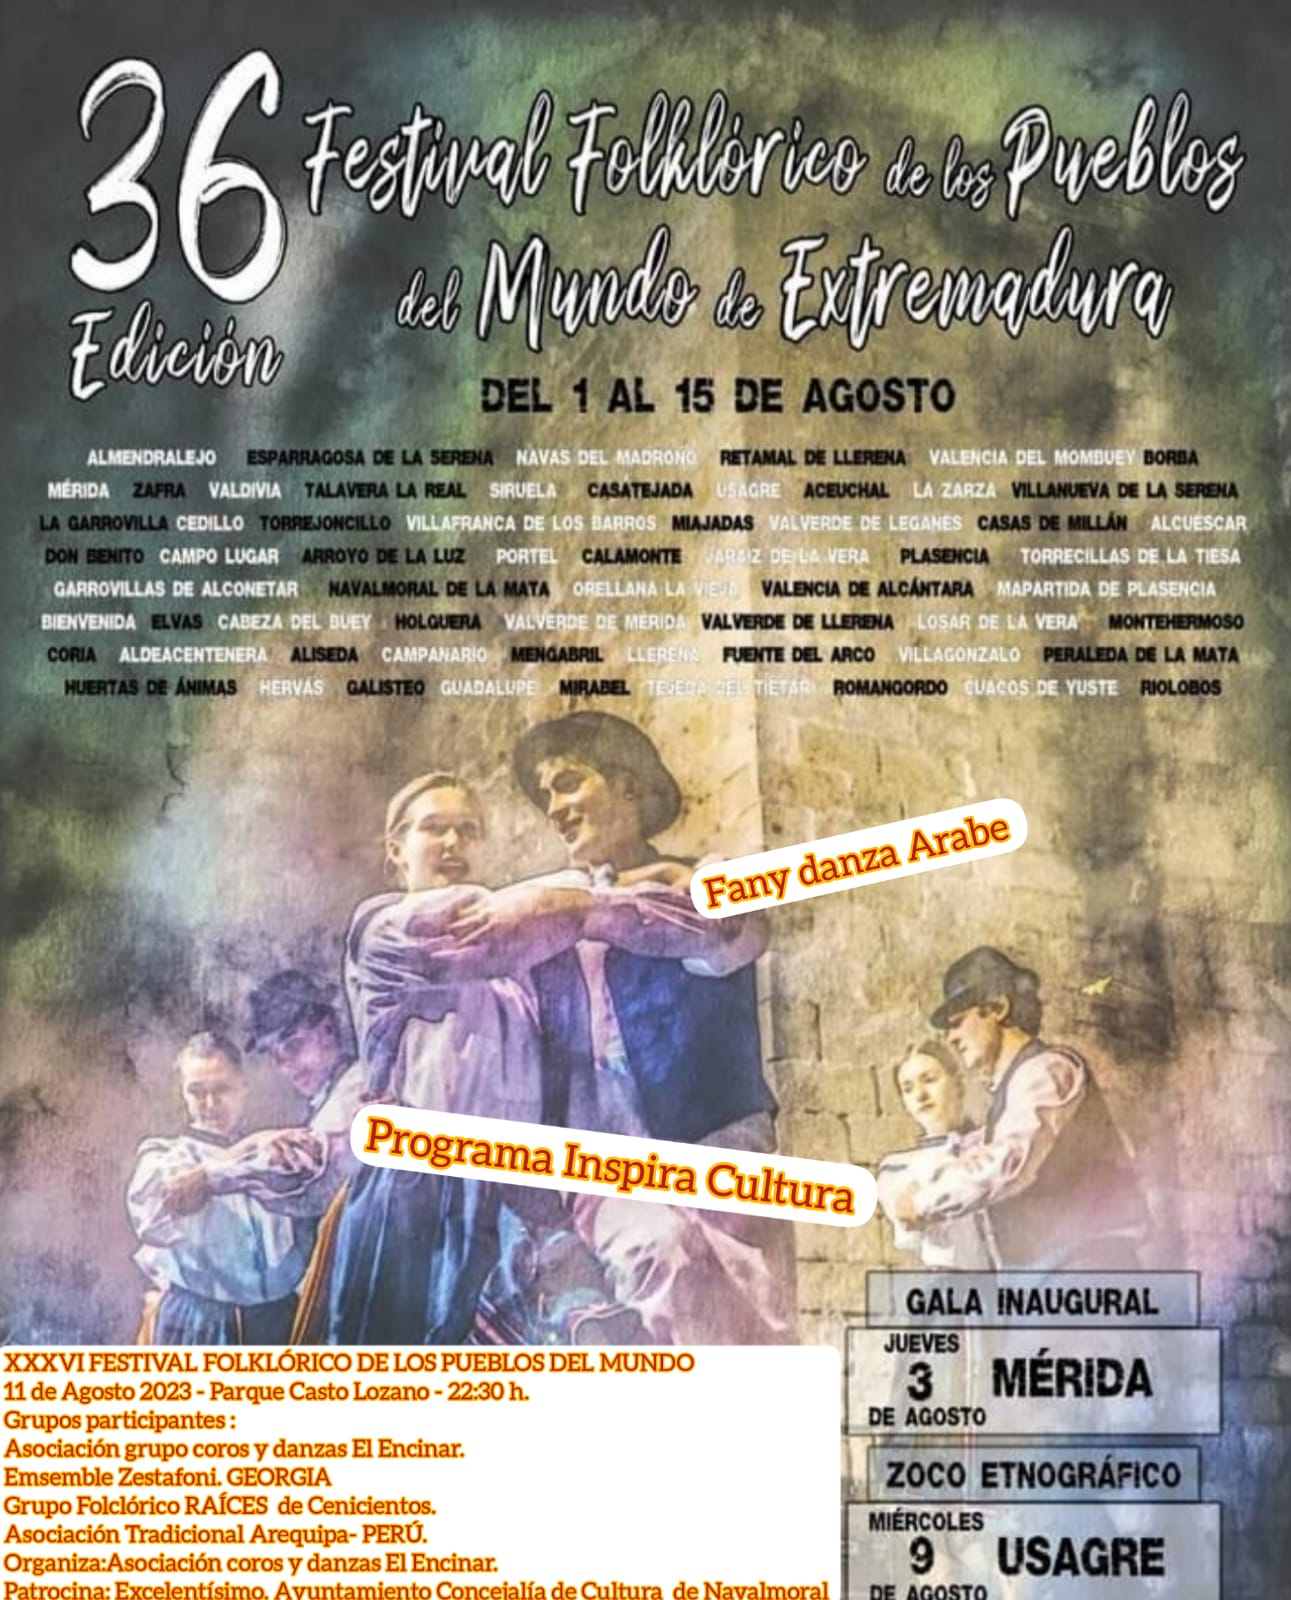 XXXVI Festival Folklórico de los Pueblos del Mundo de Extremadura - Navalmoral de la Mata (Cáceres)